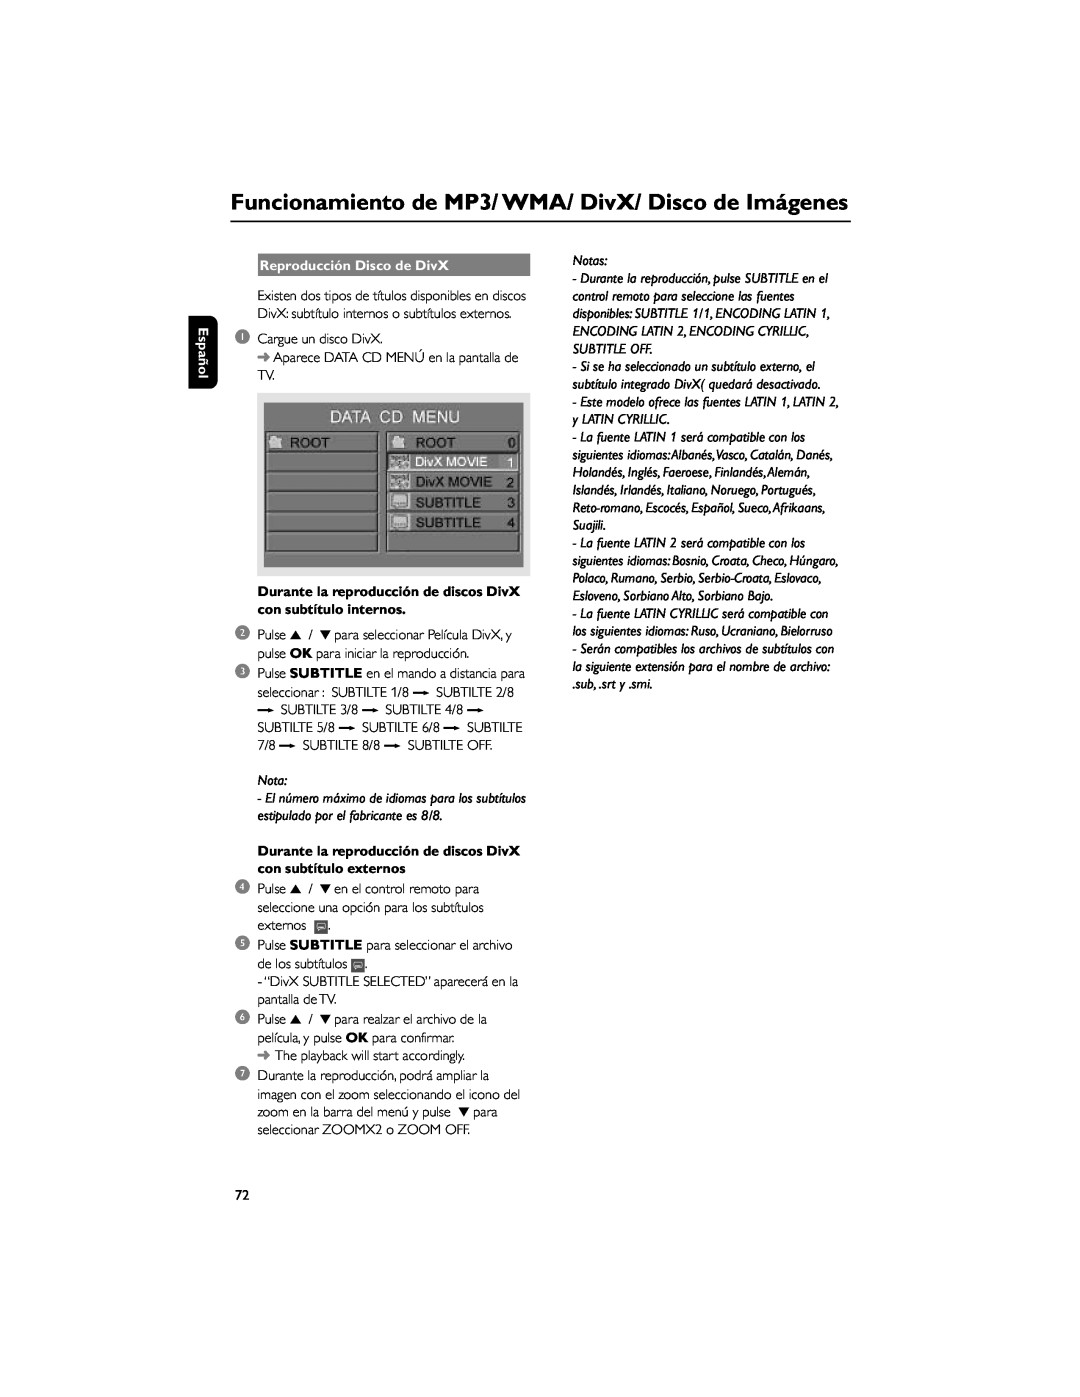 Philips FWD792 user manual Reproducción Disco de DivX, sub, .srt y .smi, Español, Notas 